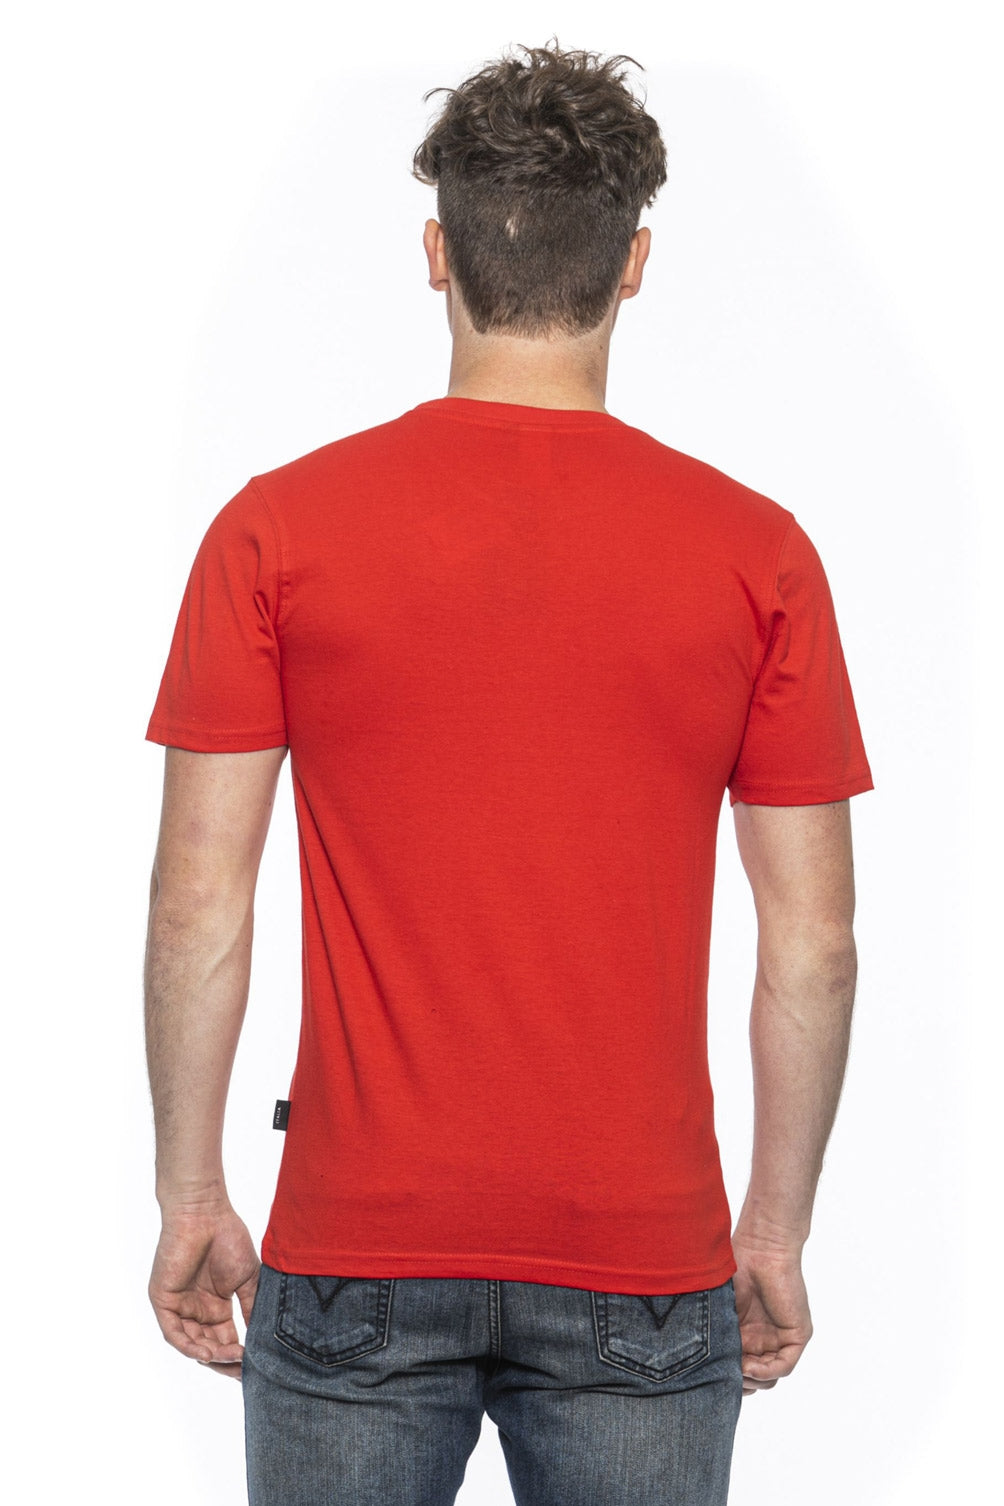 T-Shirt Uomo 19V69 Italia Rossa ROSSO TROY